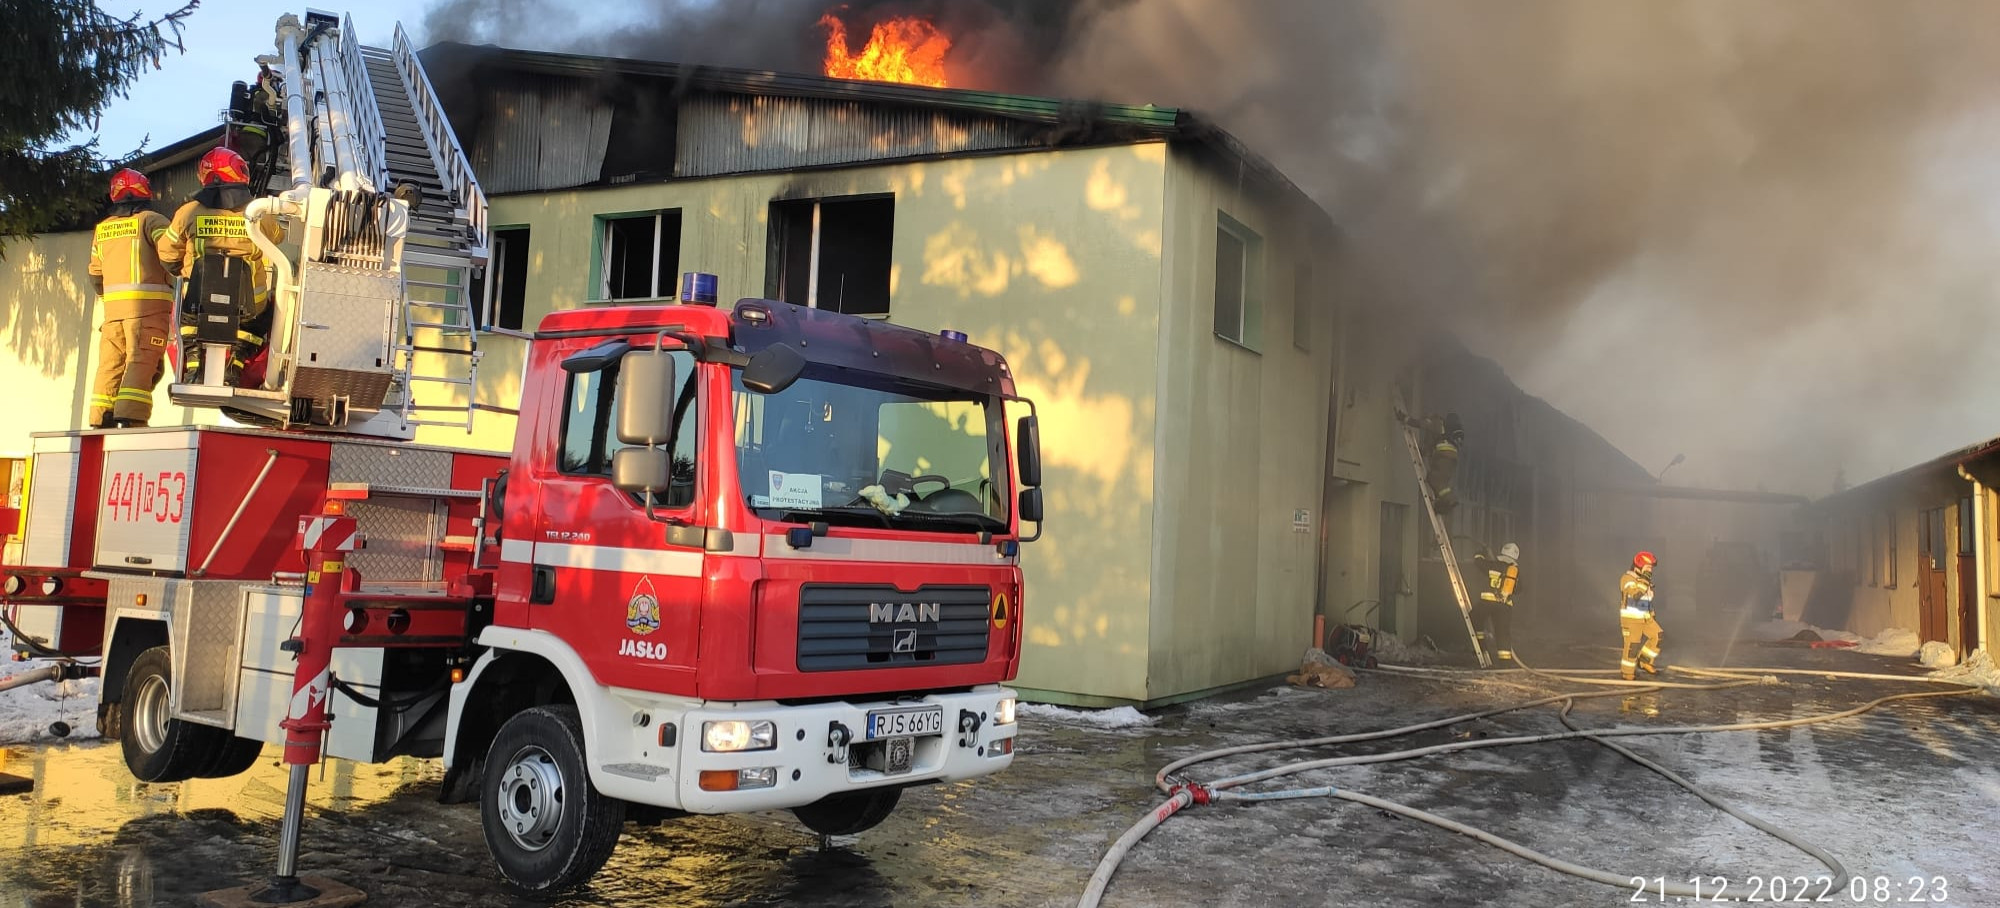 Wybuchł pożar w zakładzie pracy! 15 zastępów straży pożarnej walczy z żywiołem (ZDJĘCIA)